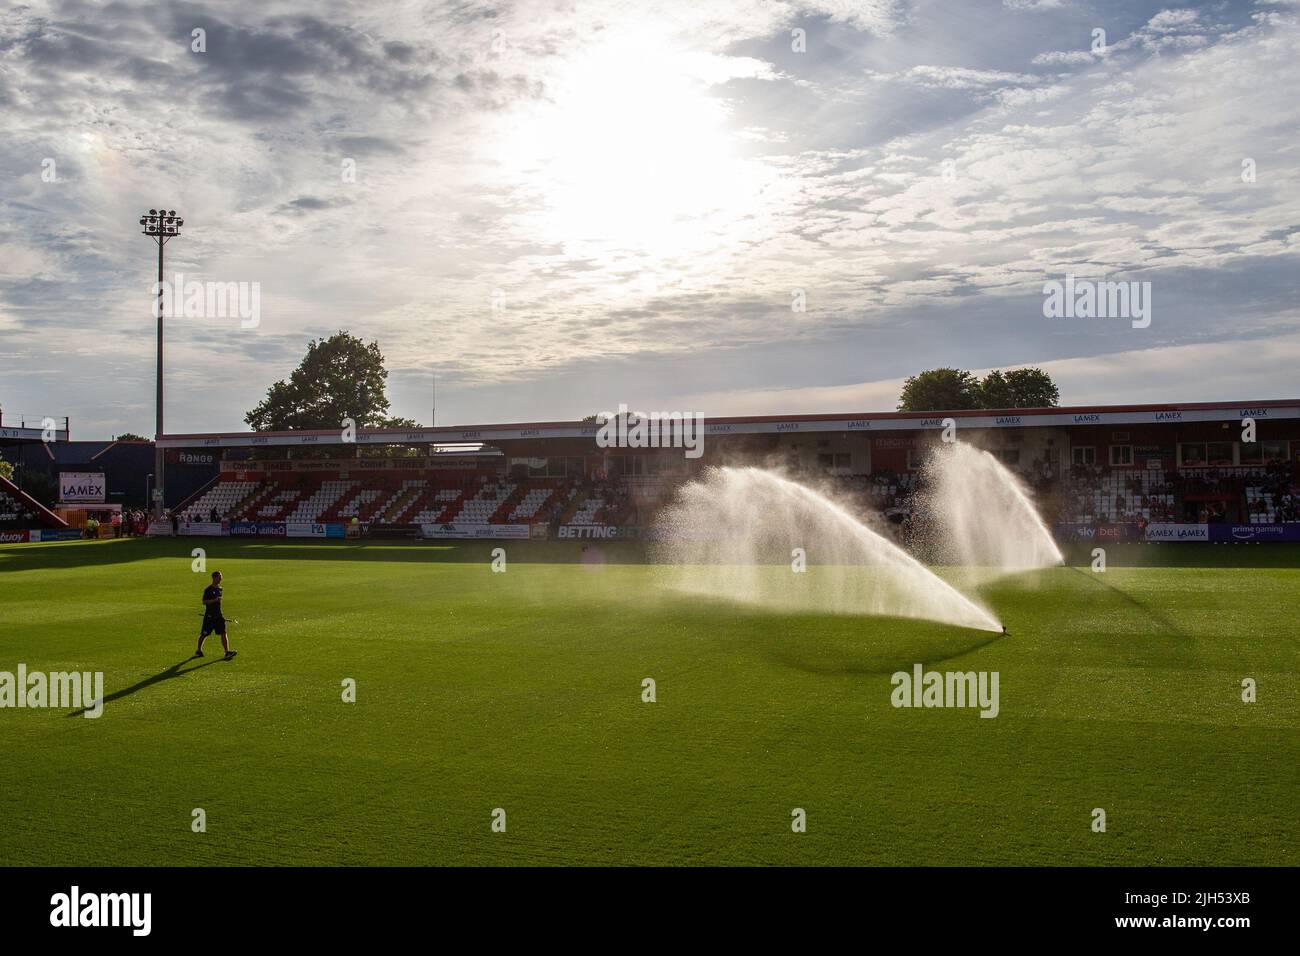 Impianto sprinkler ad acqua in funzione presso lo stadio di calcio prima della partita. Foto Stock